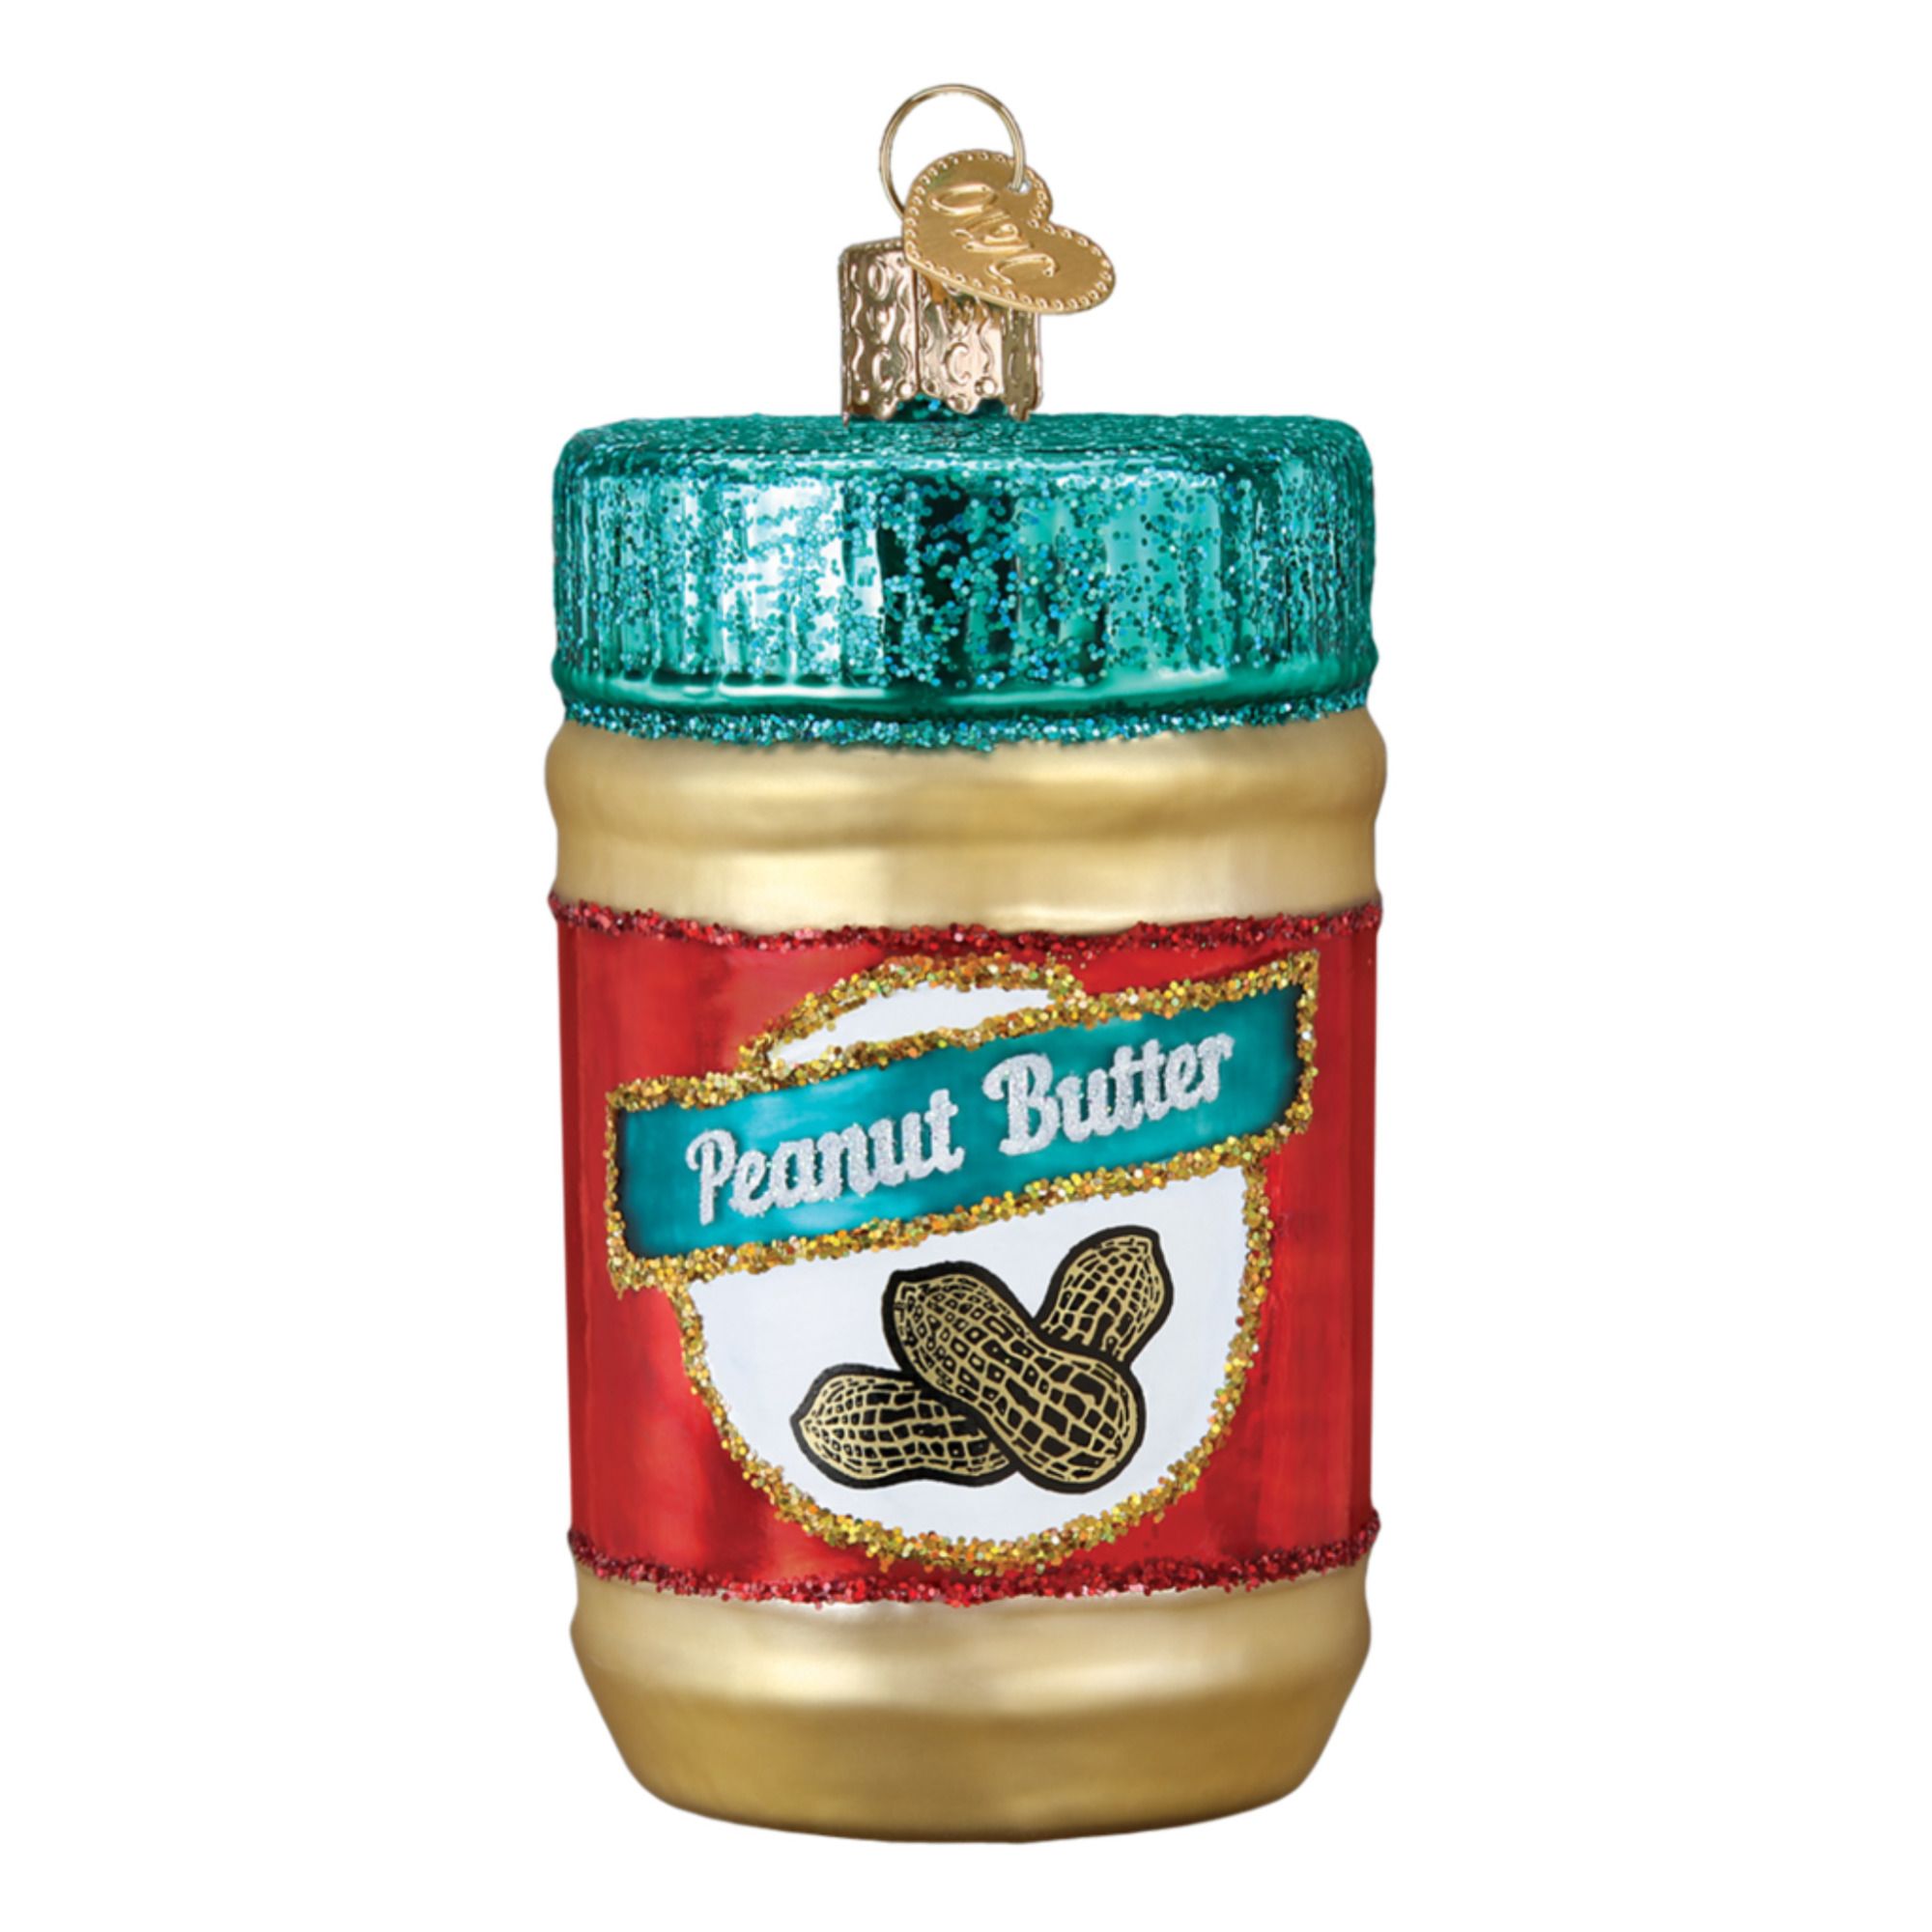 Old World Christmas - Décoration de Noël Peanut butter - Multicolore